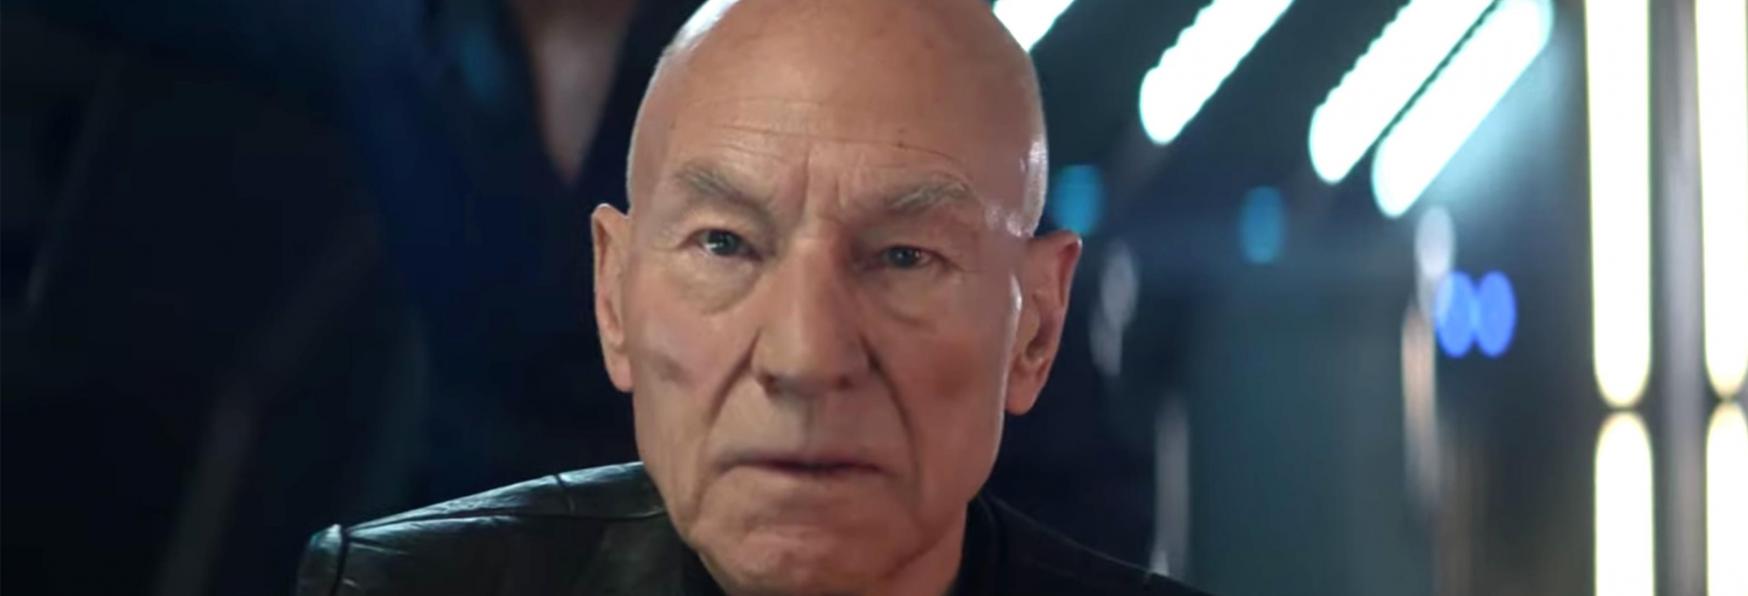 Star Trek: Picard 3 - Produzione Sospesa a causa del Covid-19